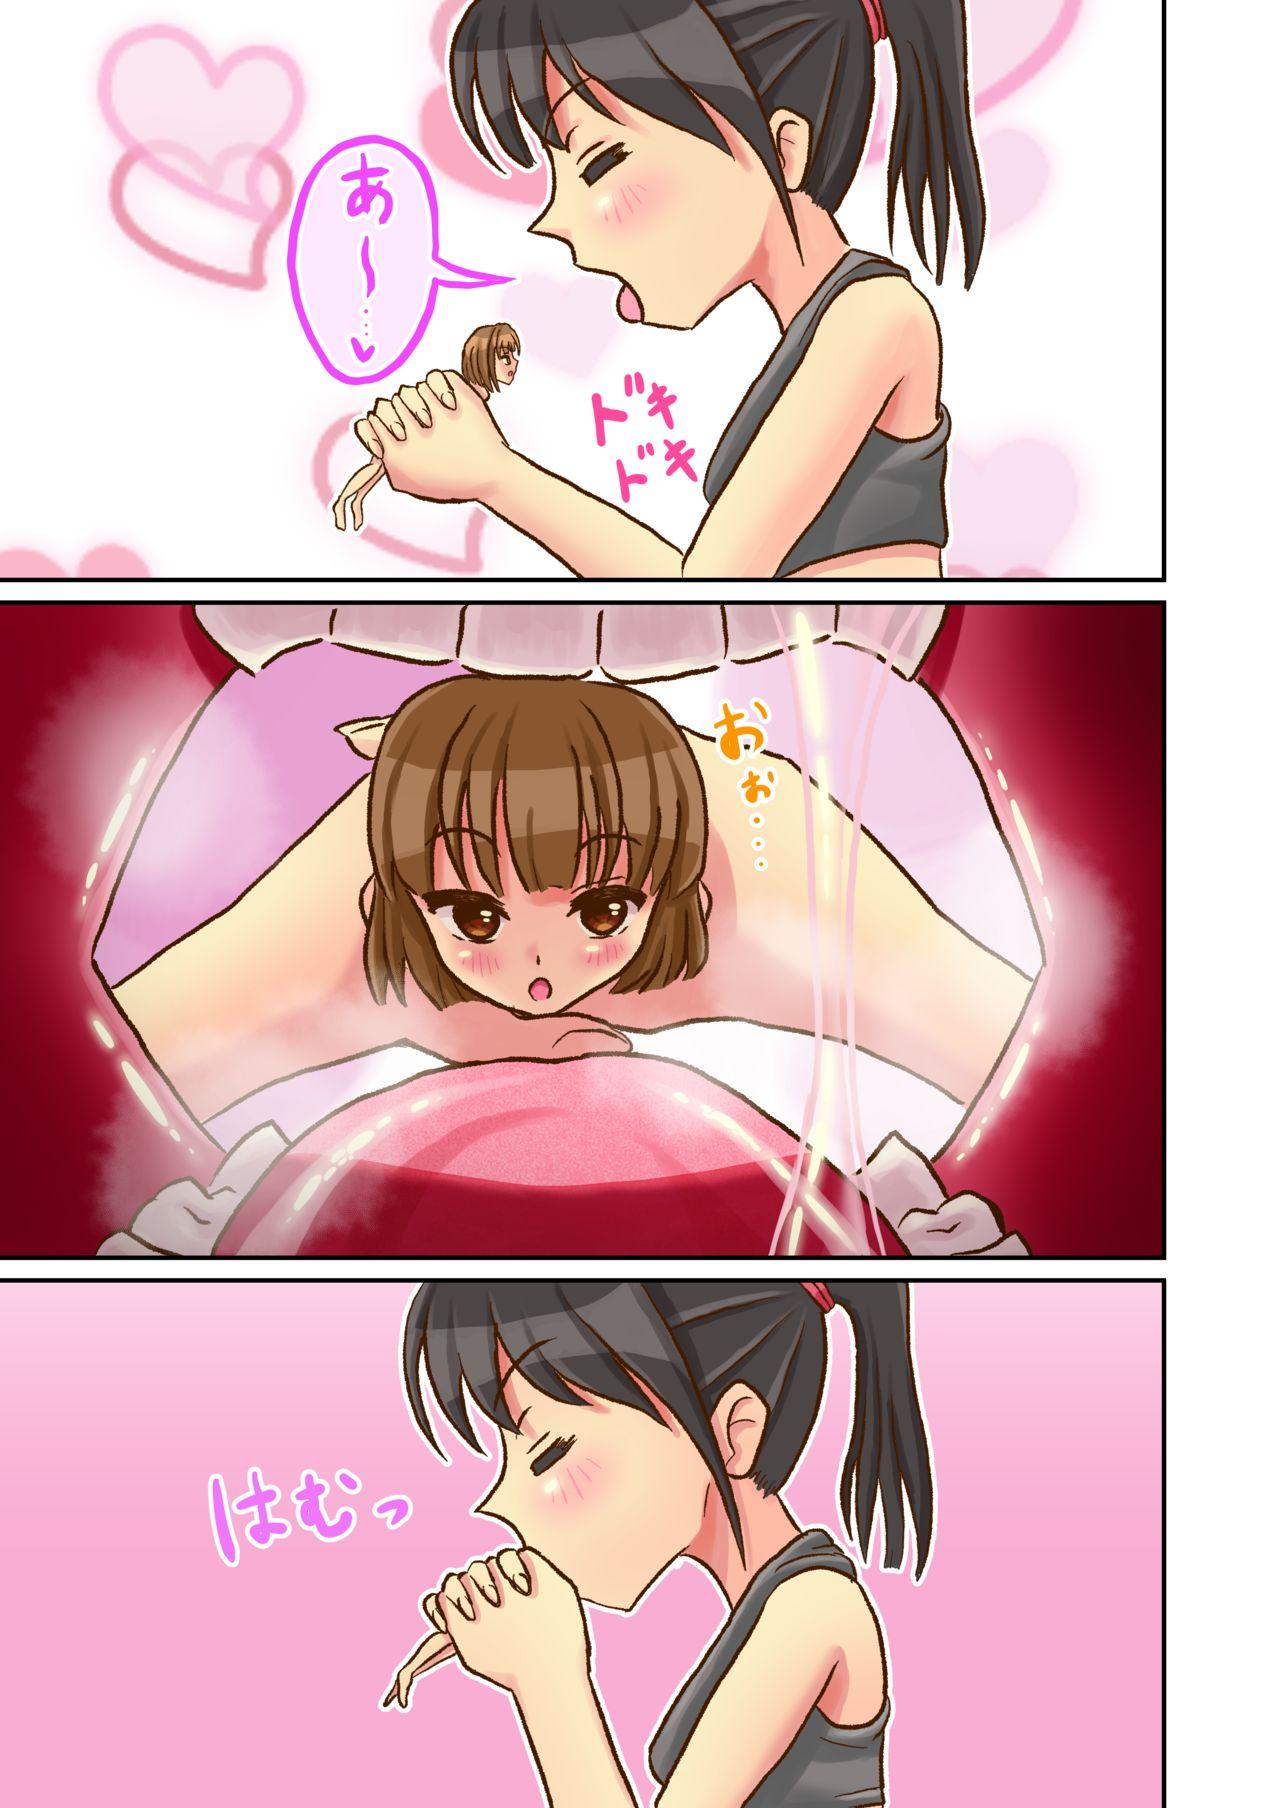 Tgirls Marunomi Feti no Tsundere Musume ga Nettori to Marunomi shite kureru Manga - Original Sex Tape - Page 4